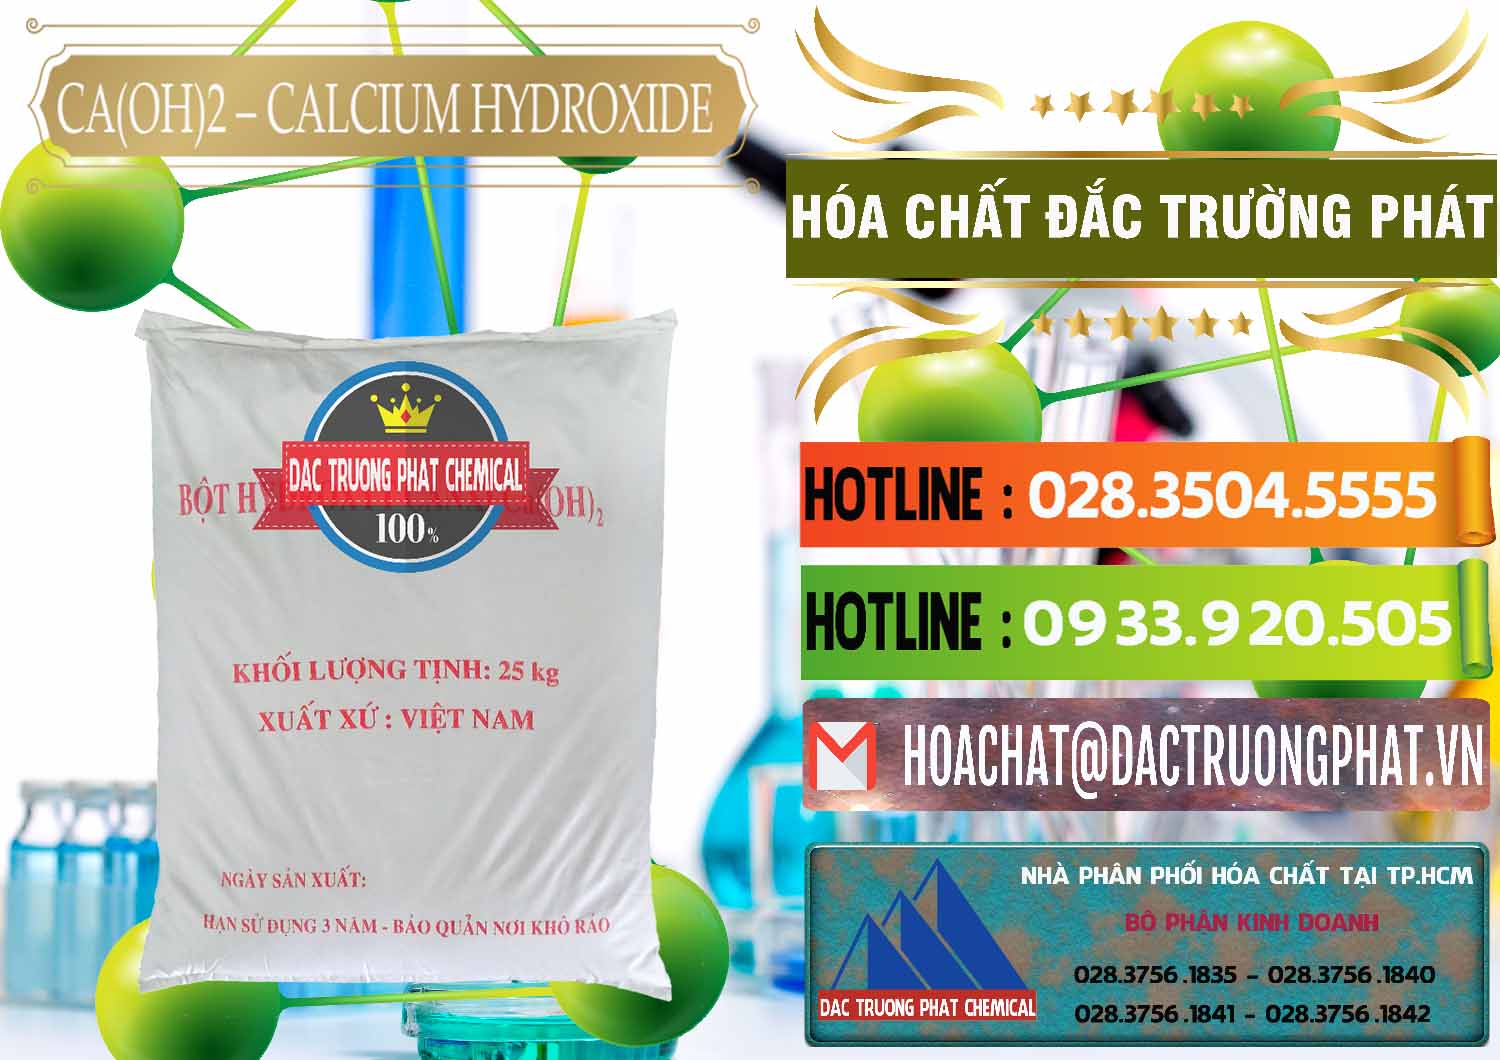 Công ty bán _ cung cấp Ca(OH)2 - Calcium Hydroxide Việt Nam - 0186 - Nhà cung cấp và bán hóa chất tại TP.HCM - cungcaphoachat.com.vn